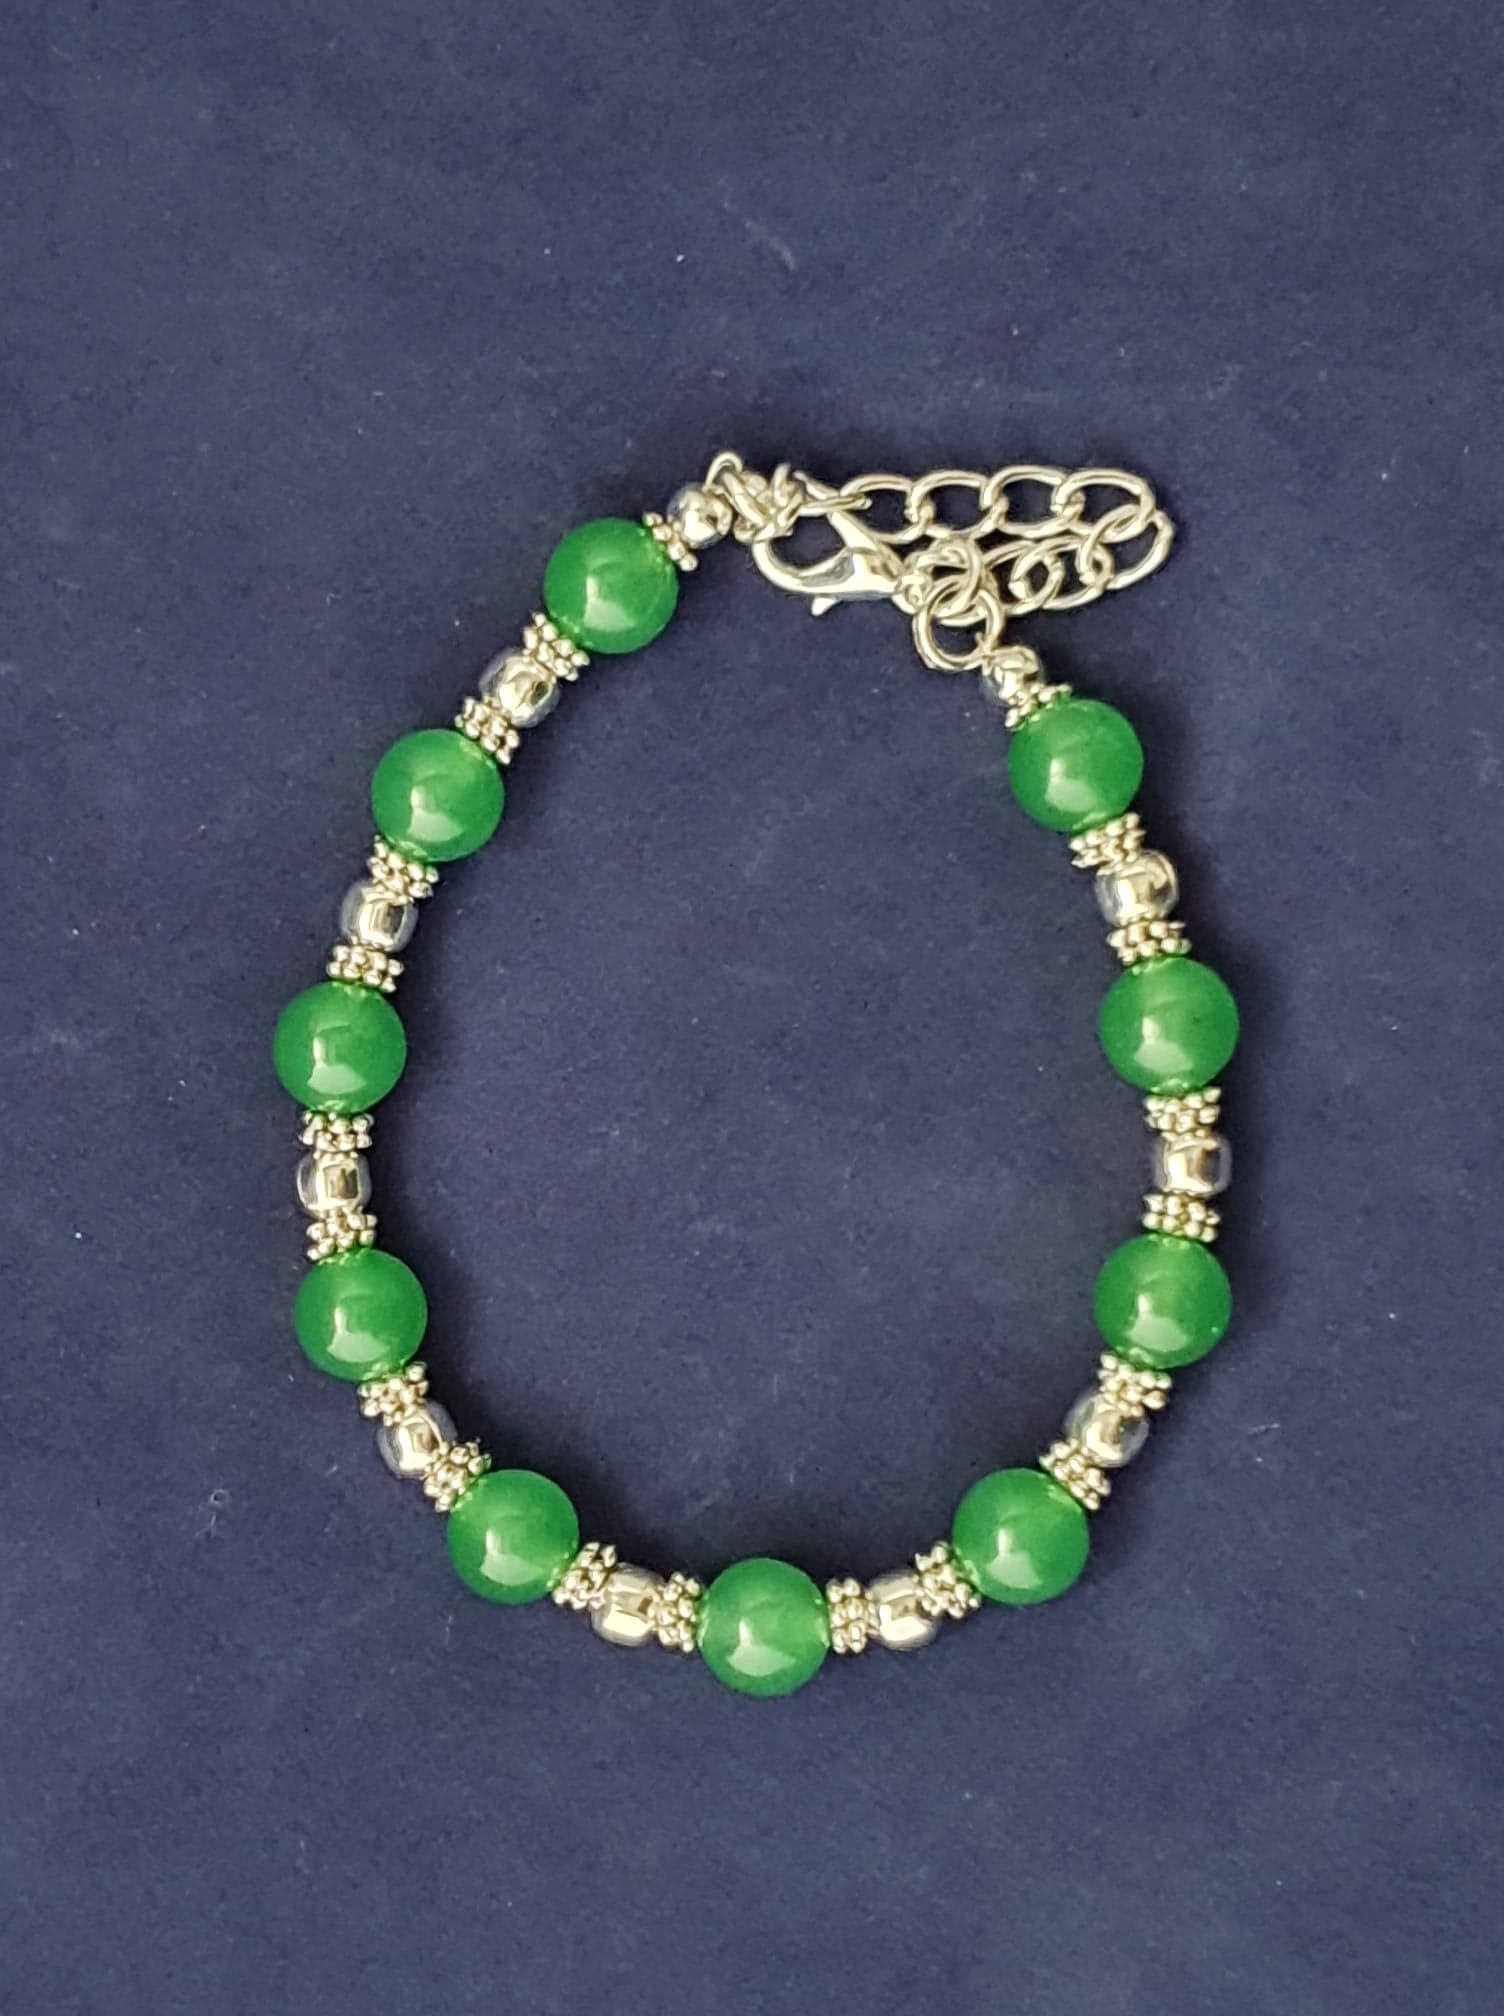 Green Aventurine beaded bracelet